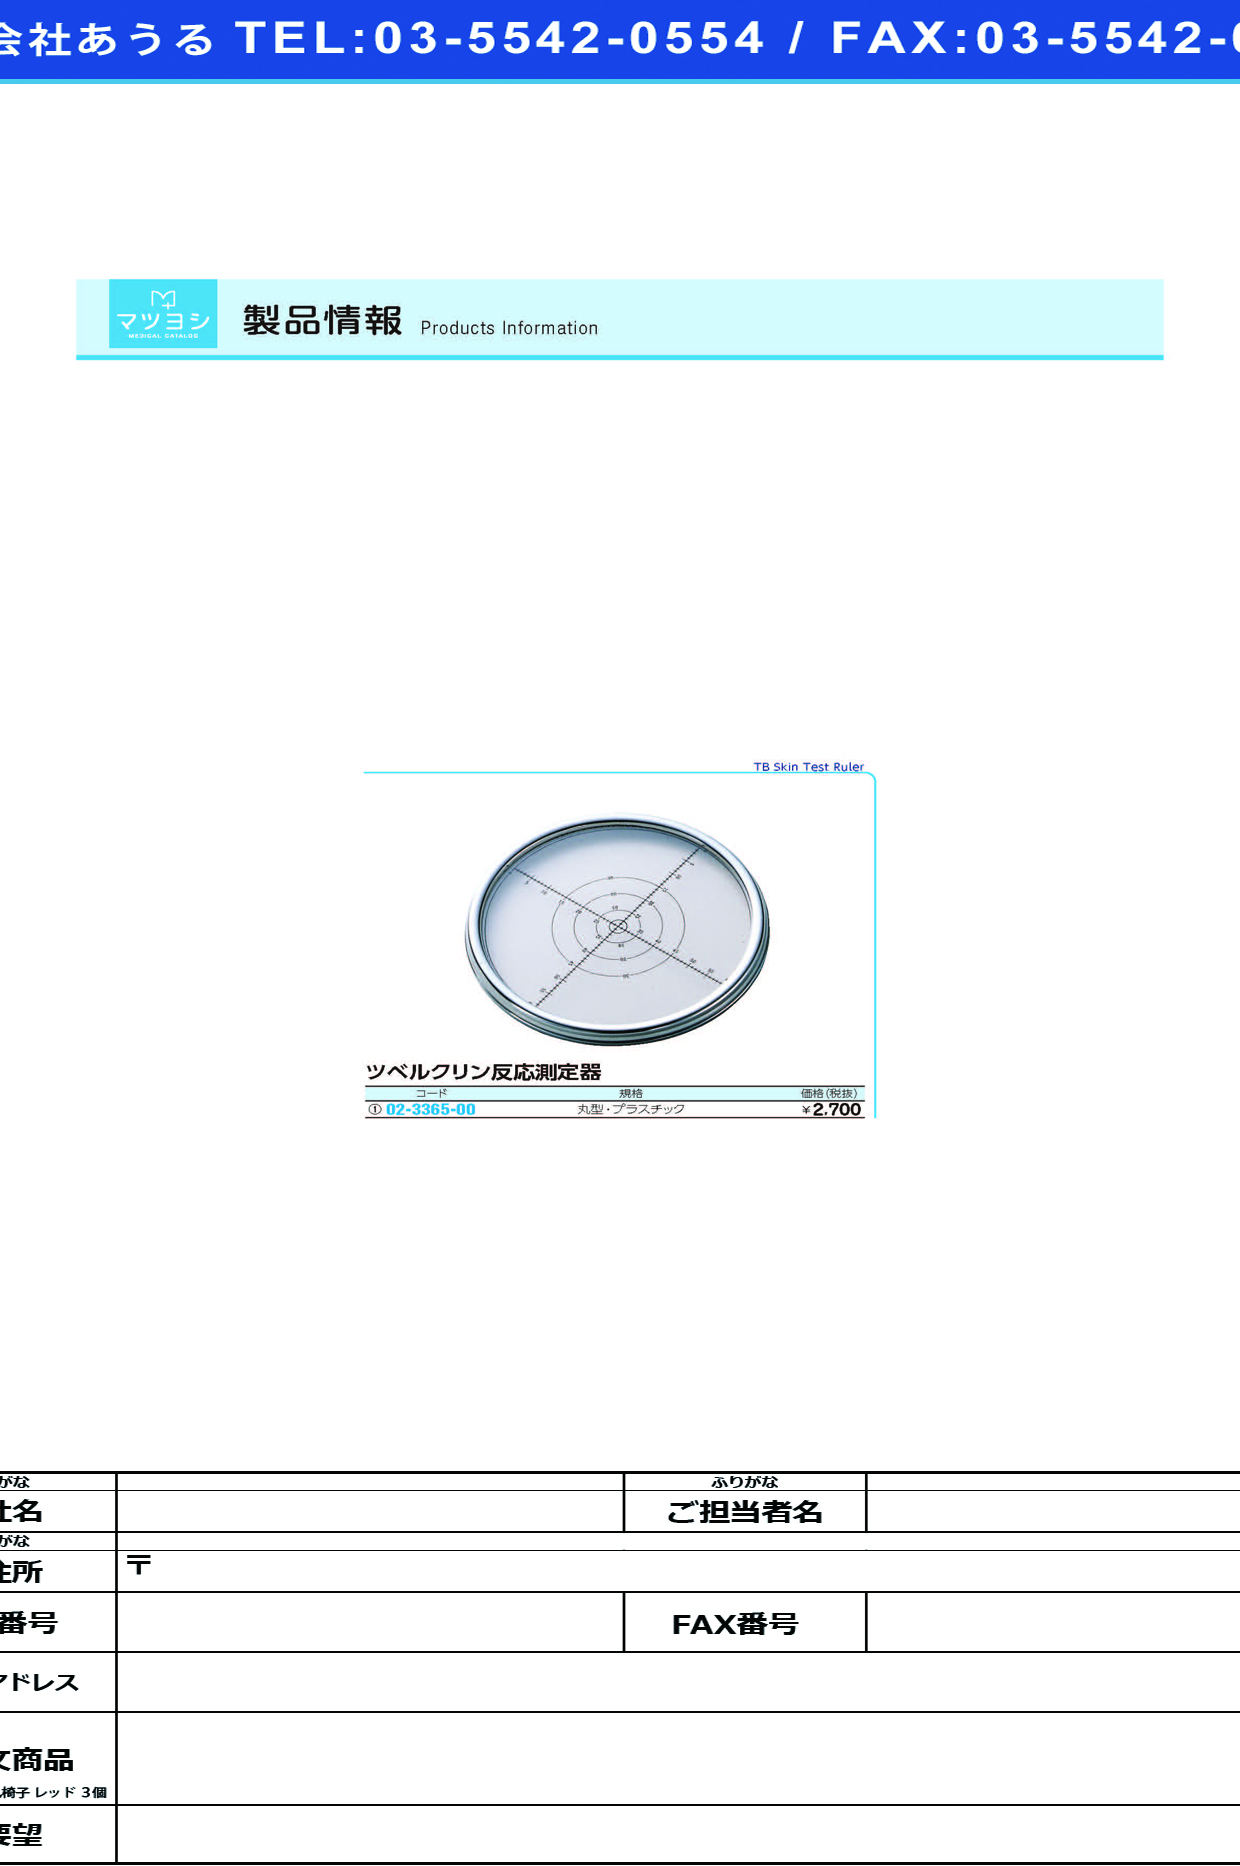 (02-3365-00)ツベルクリン反応測定器（丸型） ﾌﾟﾗｽﾁｯｸ ﾂﾍﾞﾙｸﾘﾝﾊﾝﾉｳｿｸﾃｲｷ(ﾏﾙ)【1枚単位】【2019年カタログ商品】